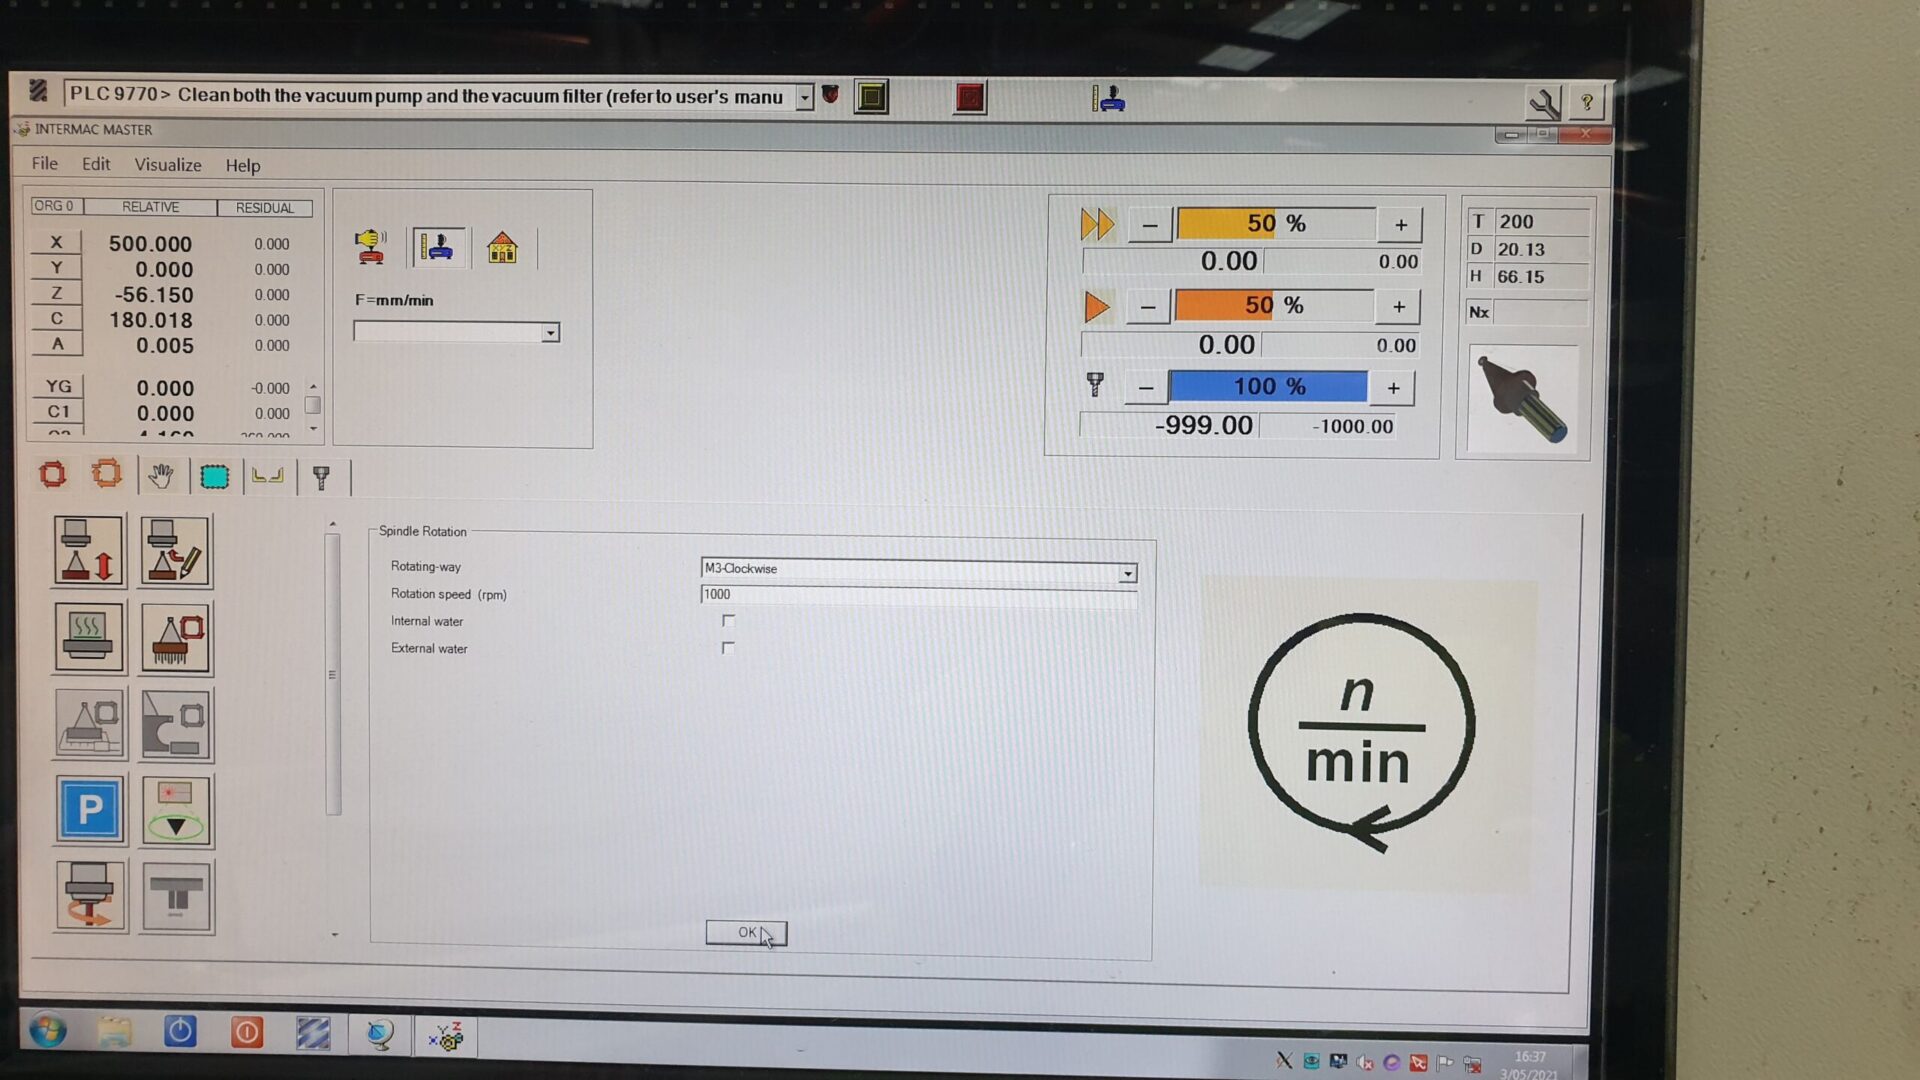 INTERMAC Master WRT screen in 1000 RPM